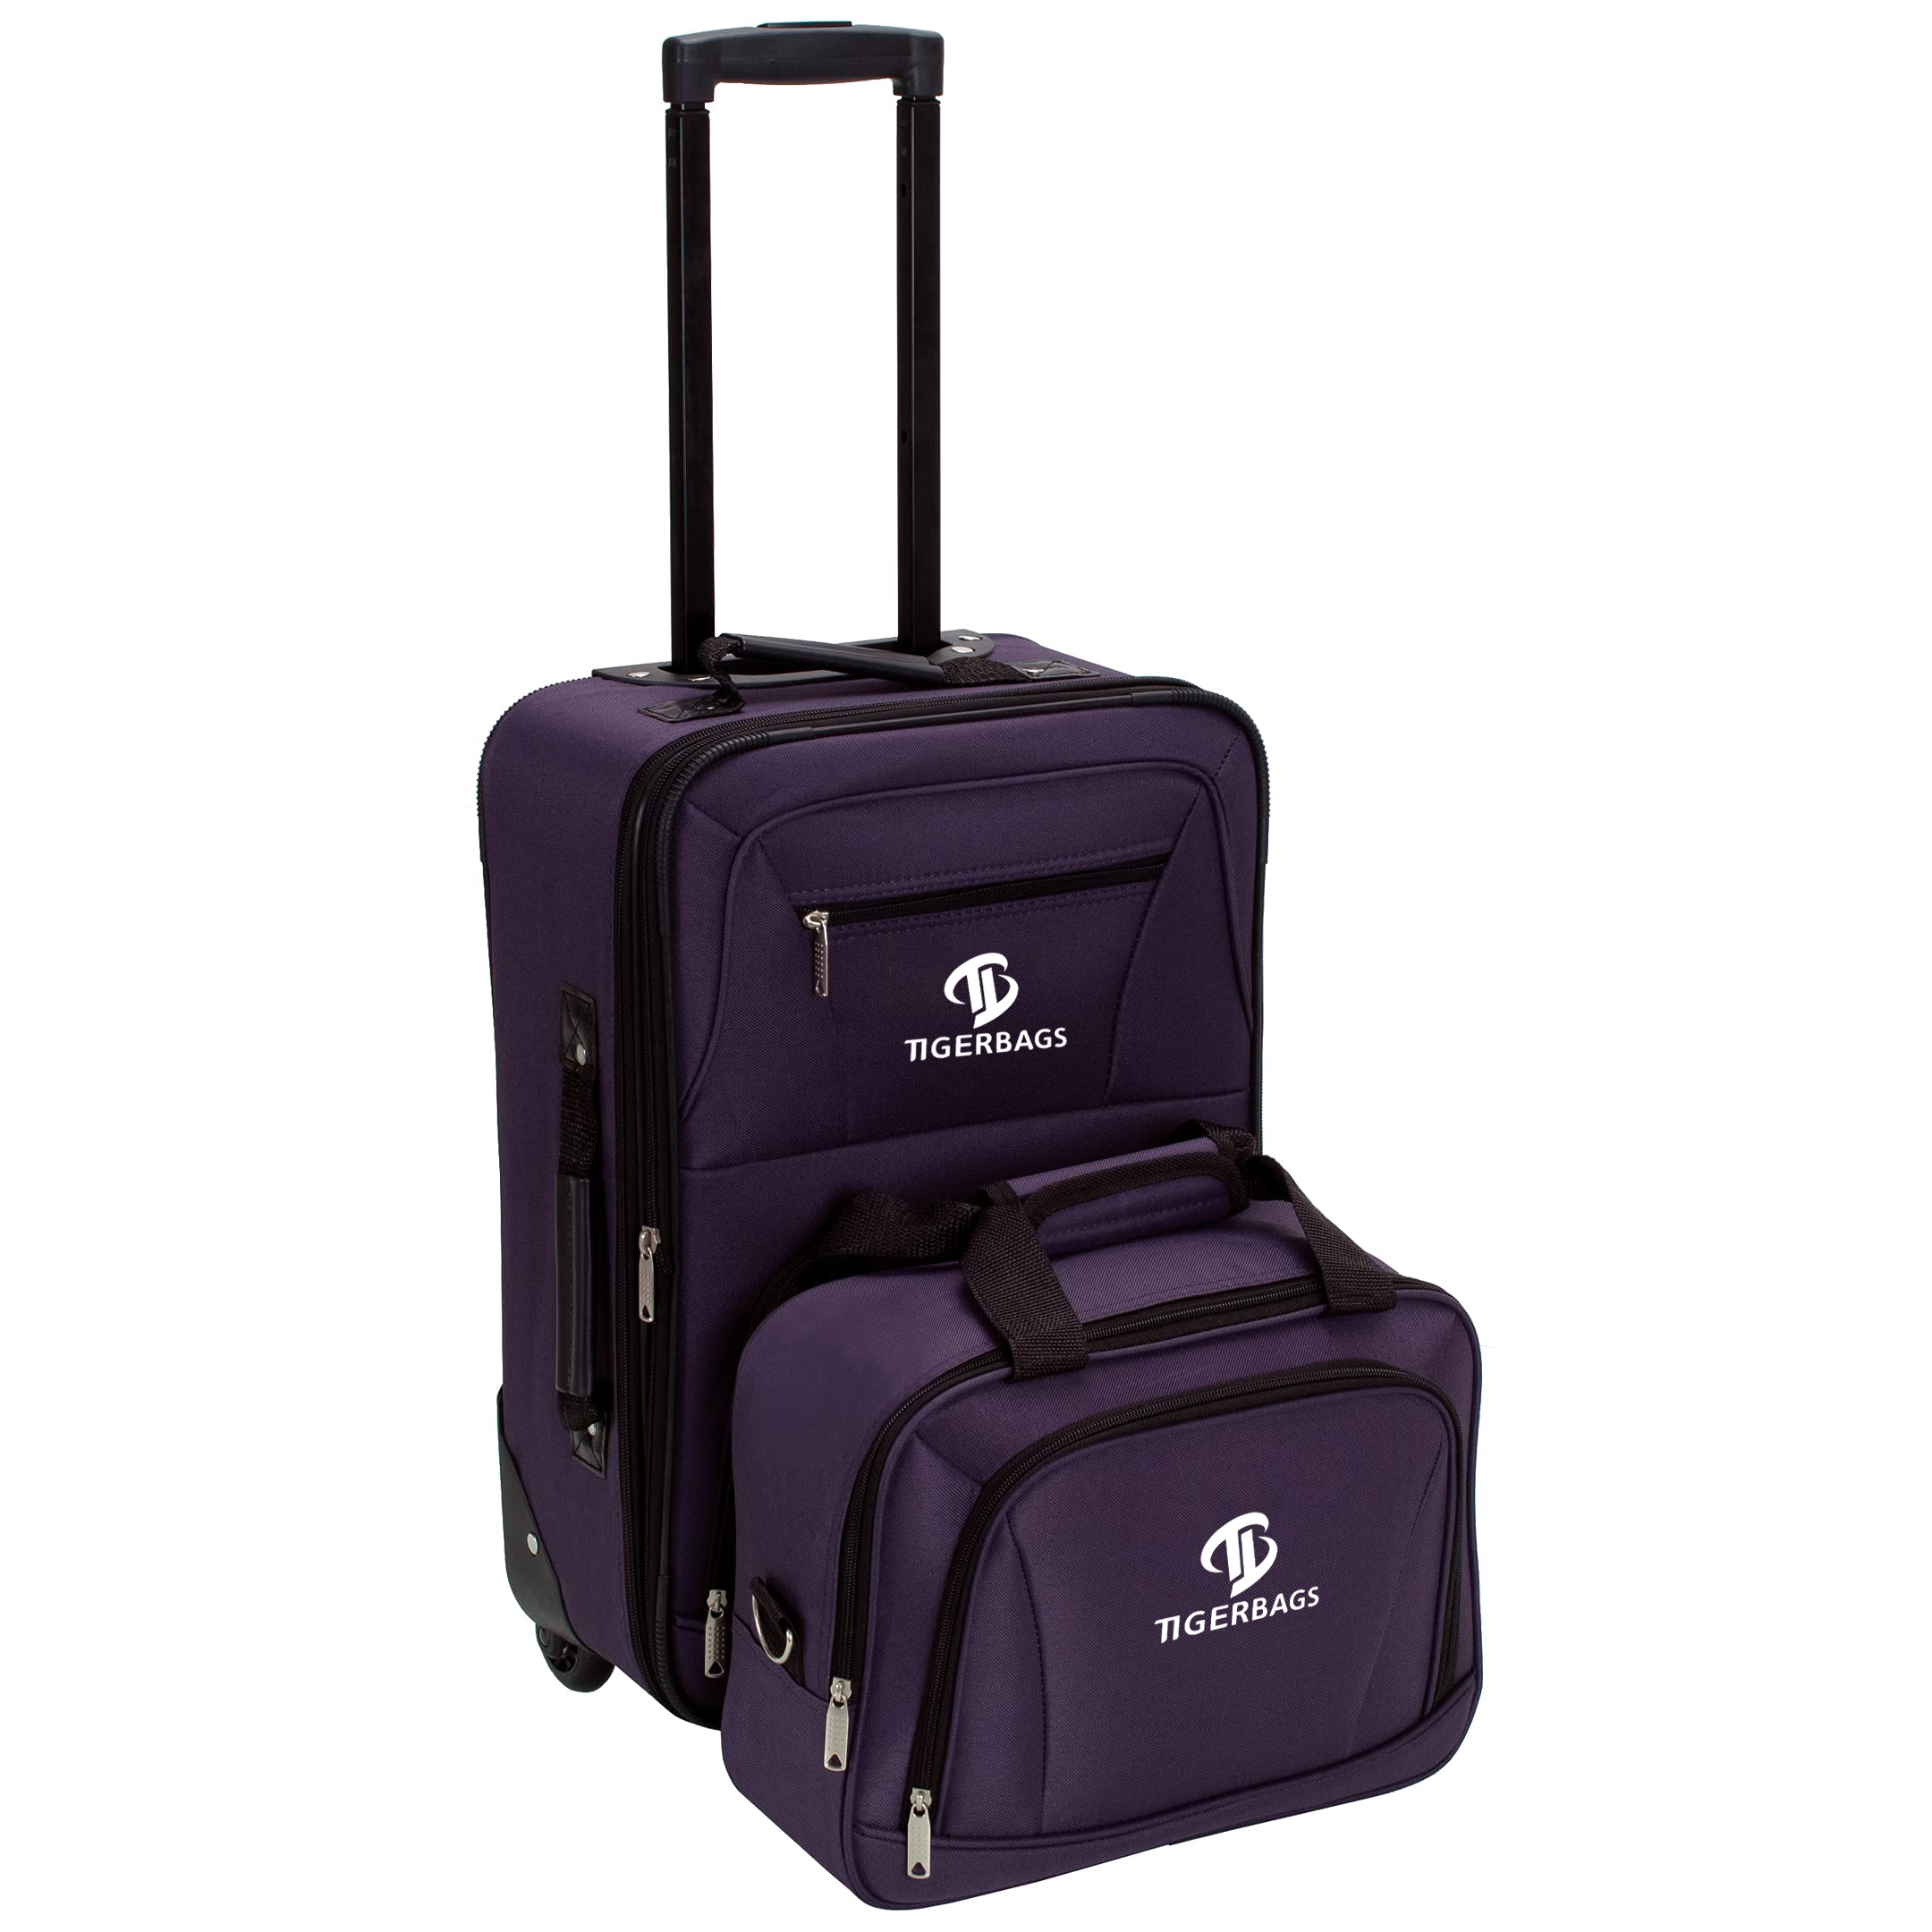 Bộ hành lý thẳng đứng Softside thời trang Màu tím.Bộ hành lý thẳng đứng softside thời trang màu tím